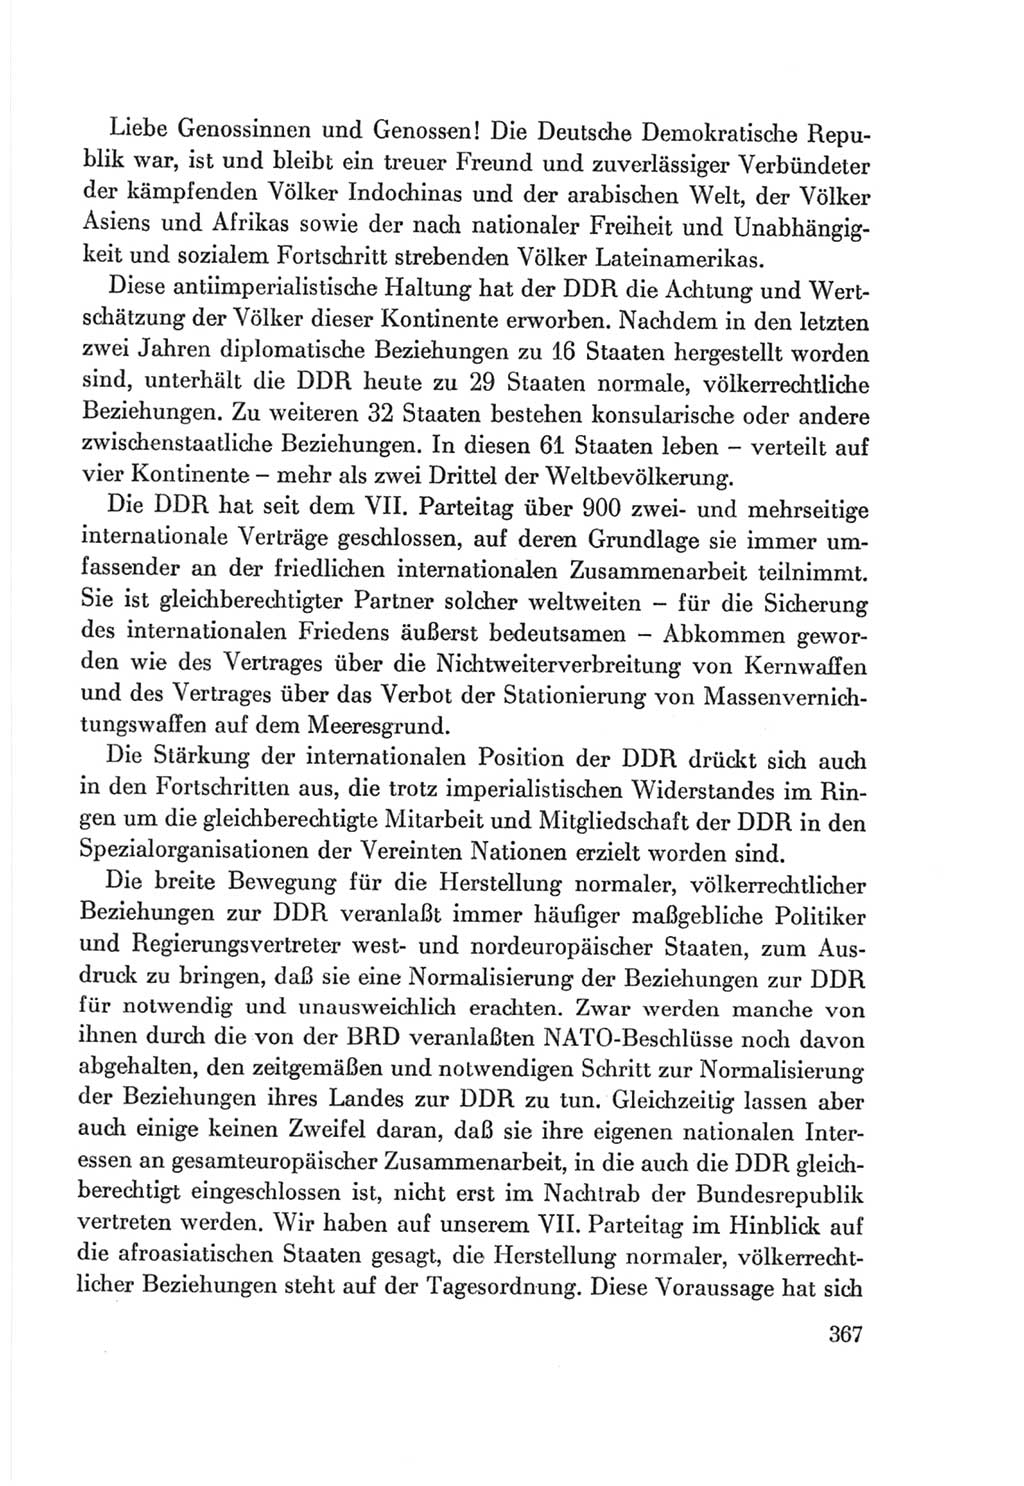 Protokoll der Verhandlungen des Ⅷ. Parteitages der Sozialistischen Einheitspartei Deutschlands (SED) [Deutsche Demokratische Republik (DDR)] 1971, Band 1, Seite 367 (Prot. Verh. Ⅷ. PT SED DDR 1971, Bd. 1, S. 367)